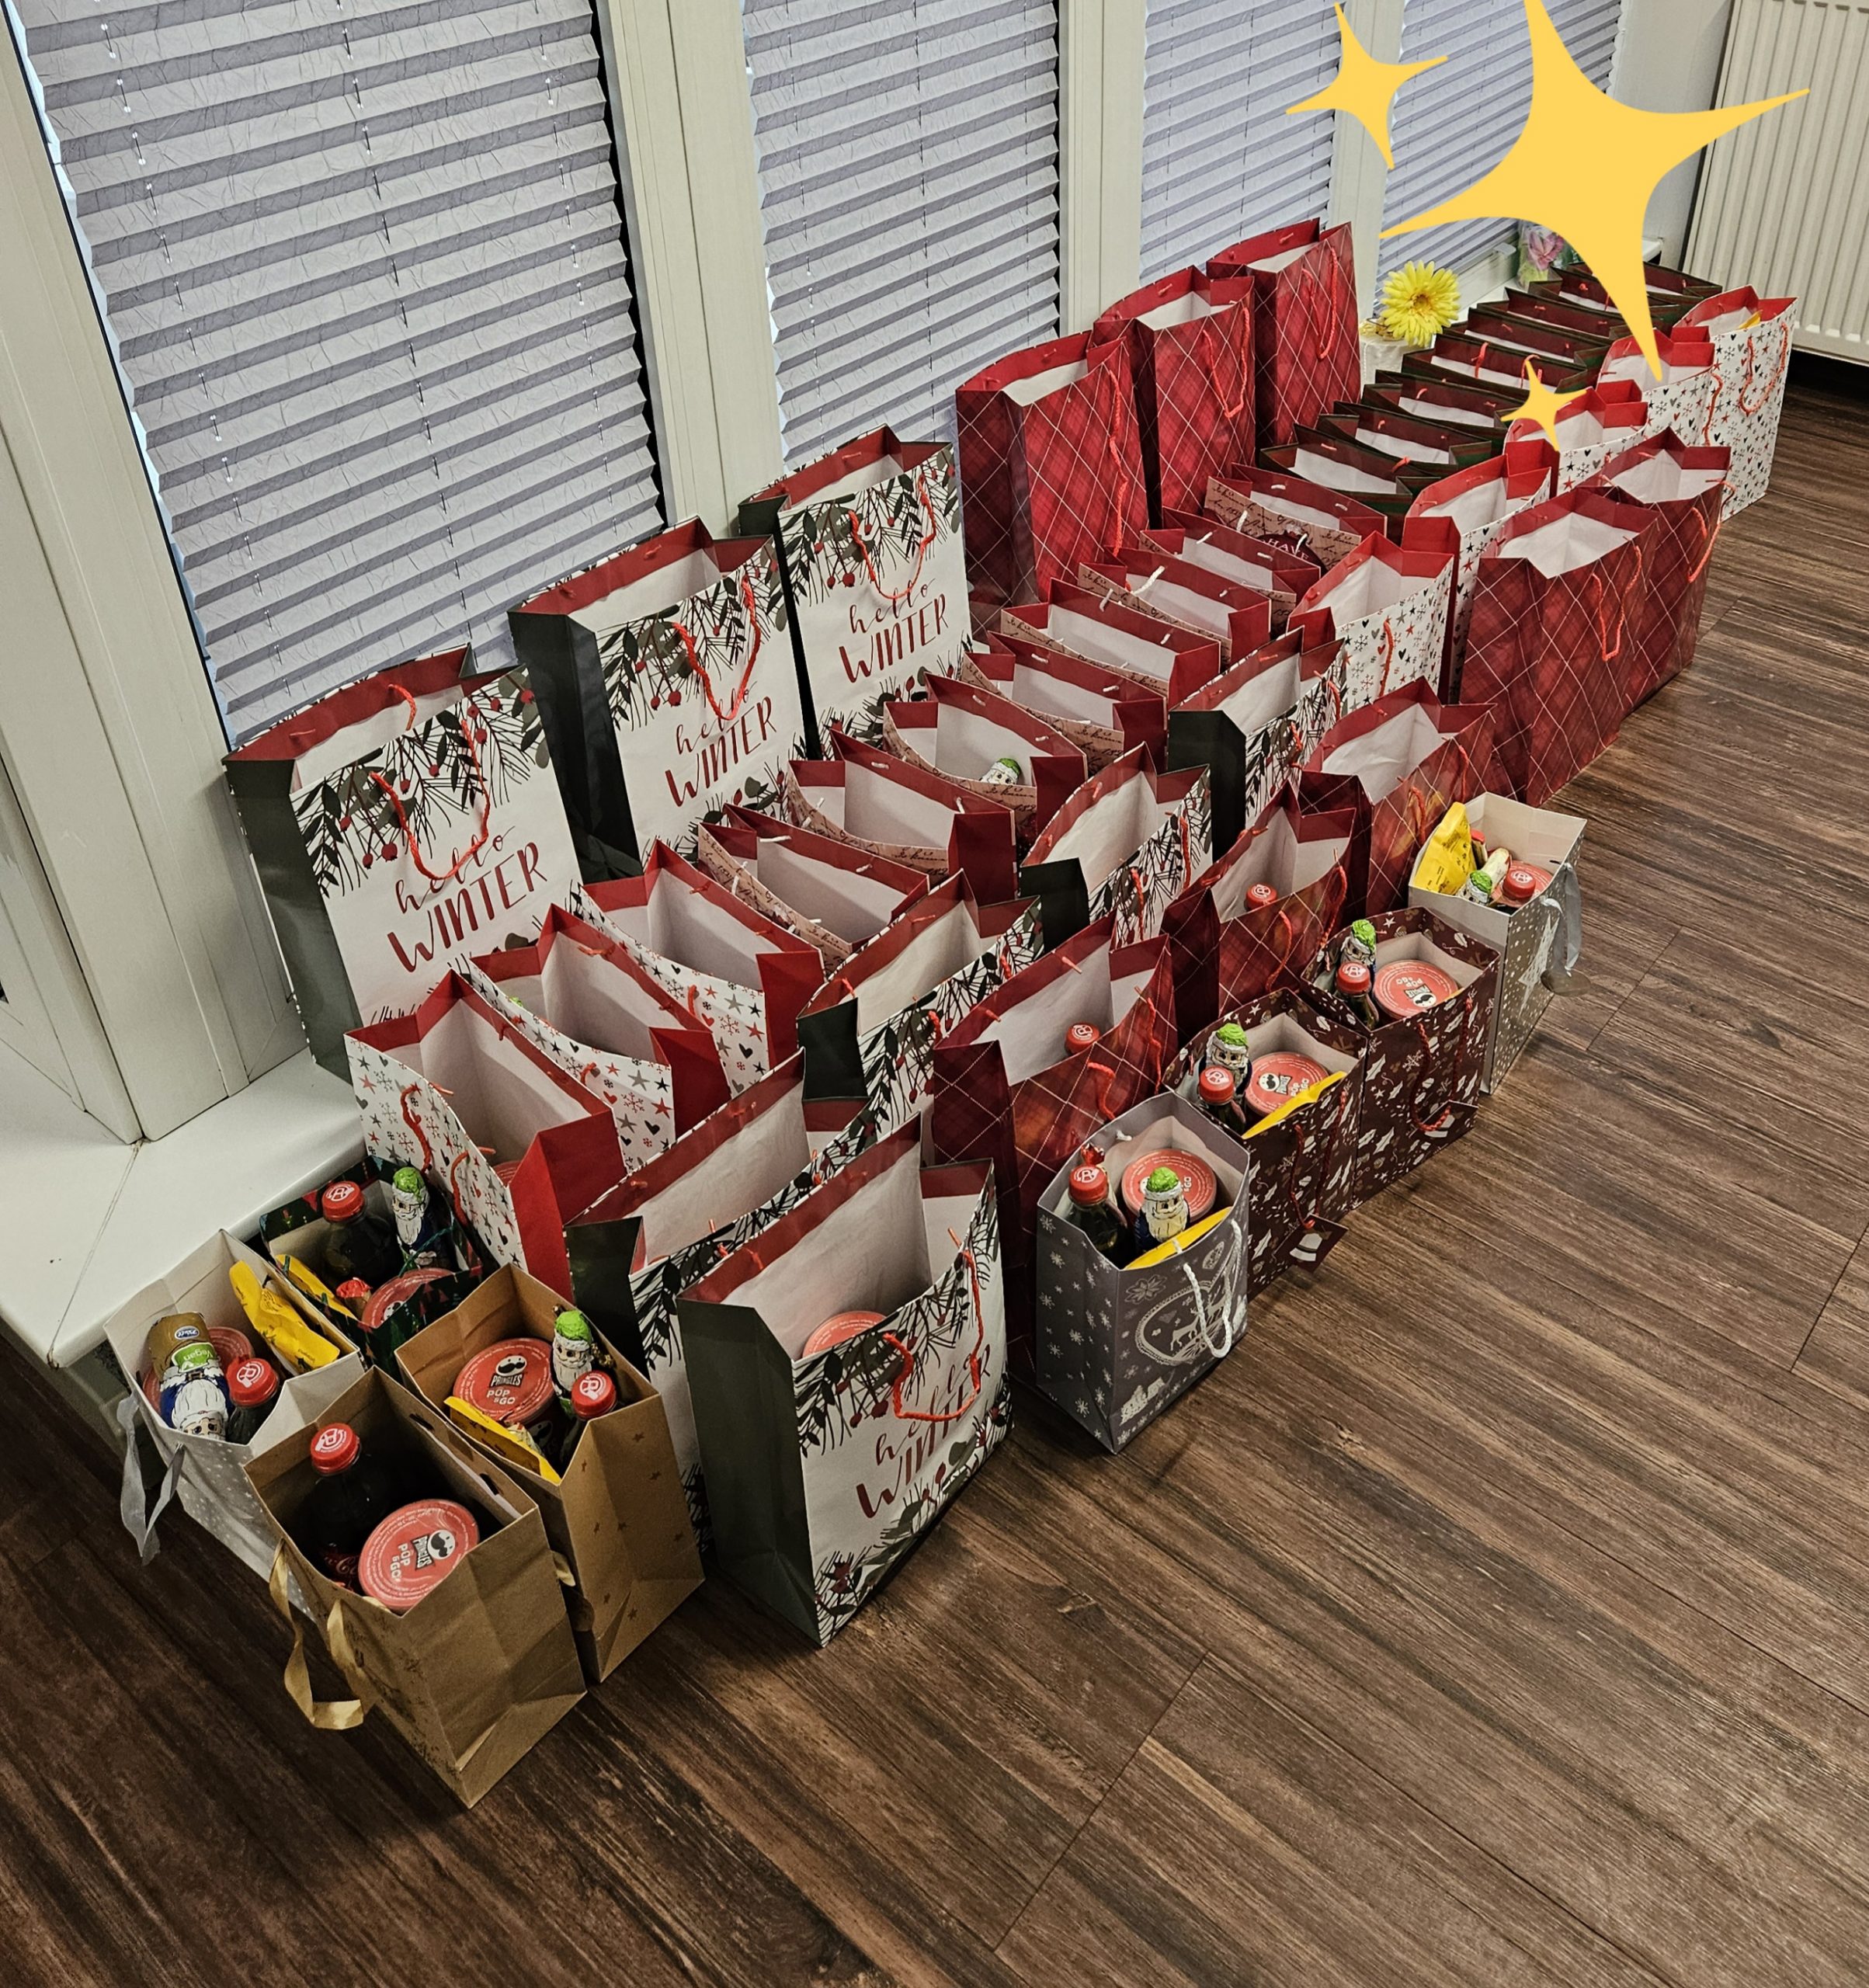 Dank der Spenden konnten 50 Weihnachtstütchen für Wohnungslose gepackt und verteilt werden